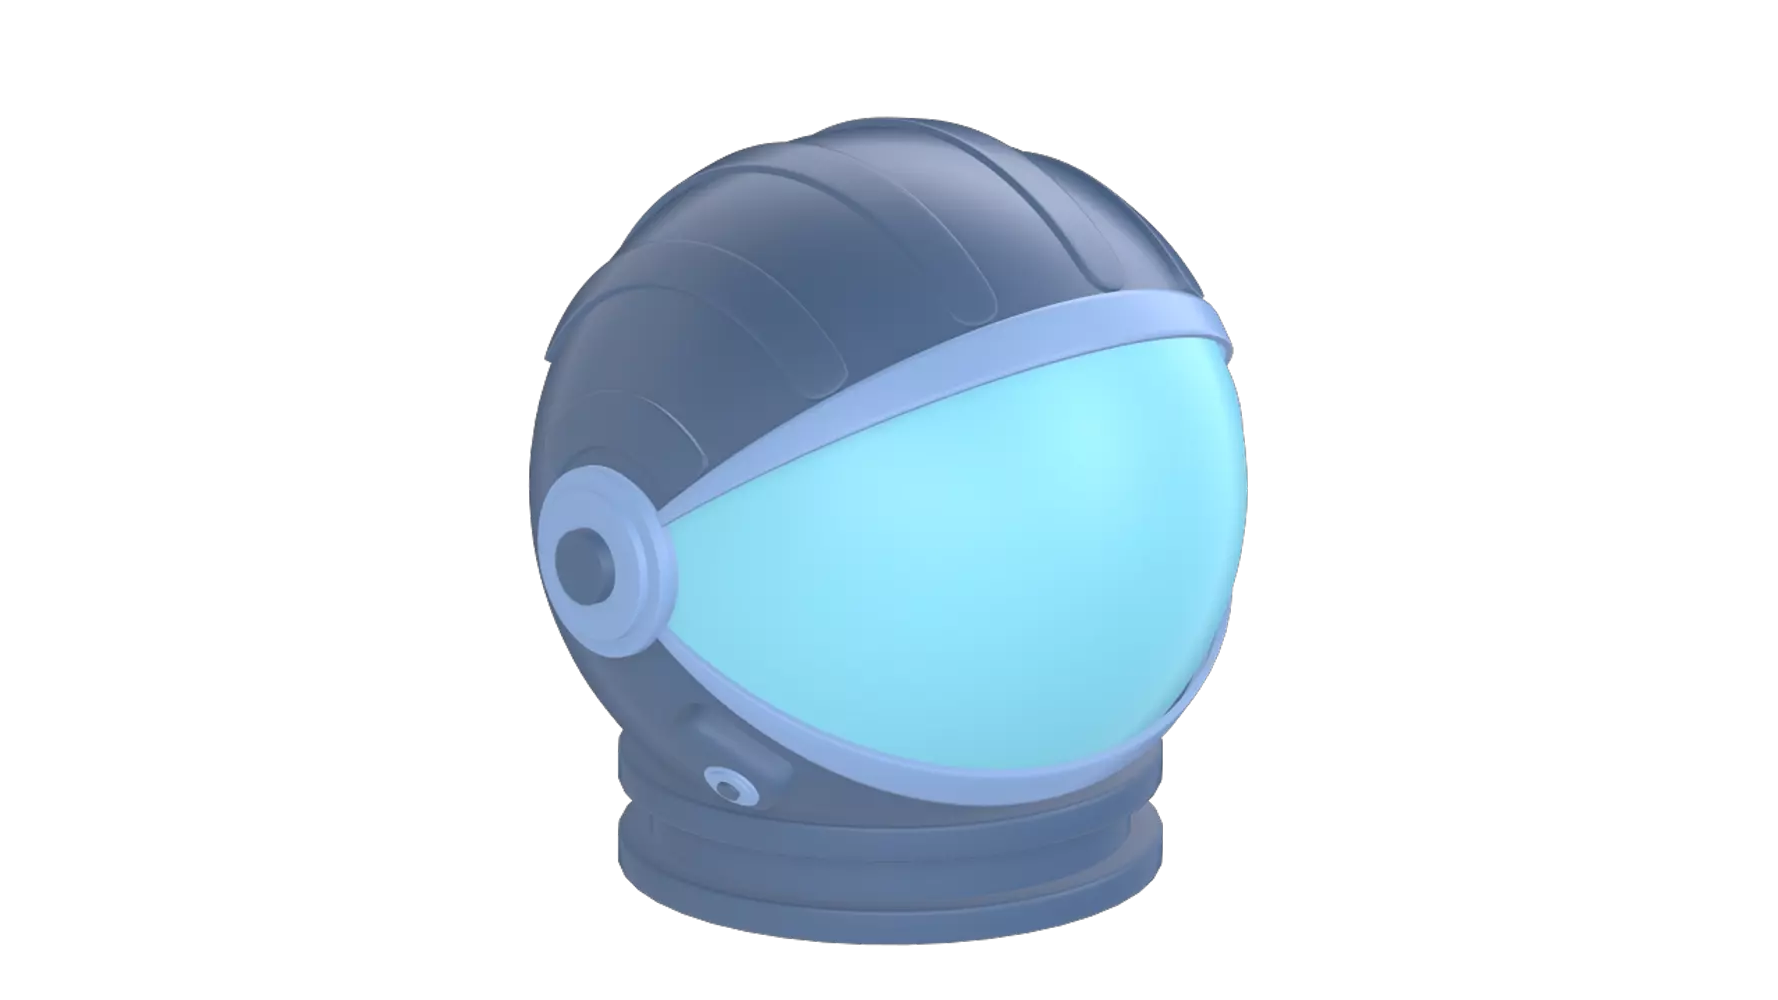 Astronaut Helmet 3D Graphic